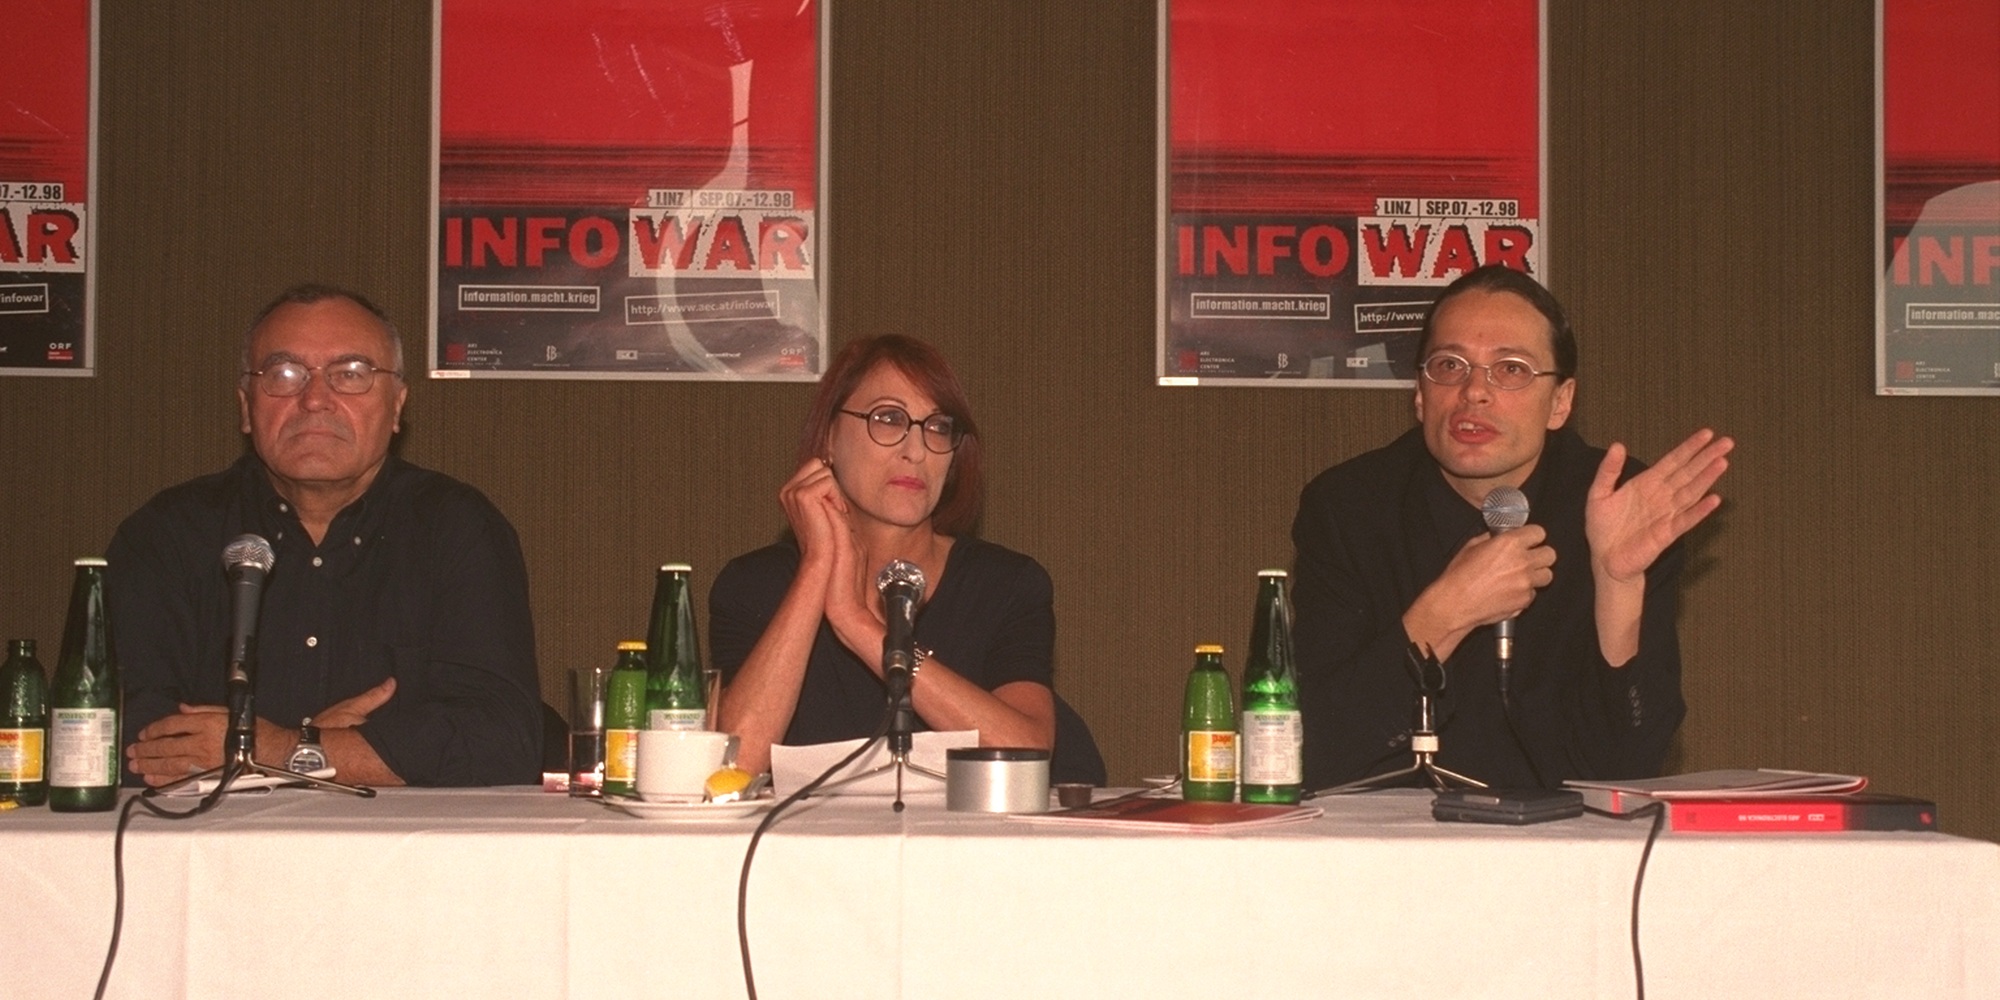 Hannes Leopoldseder, Christine Schöpf, Gerfried Stocker Press Conference Infowar 1998